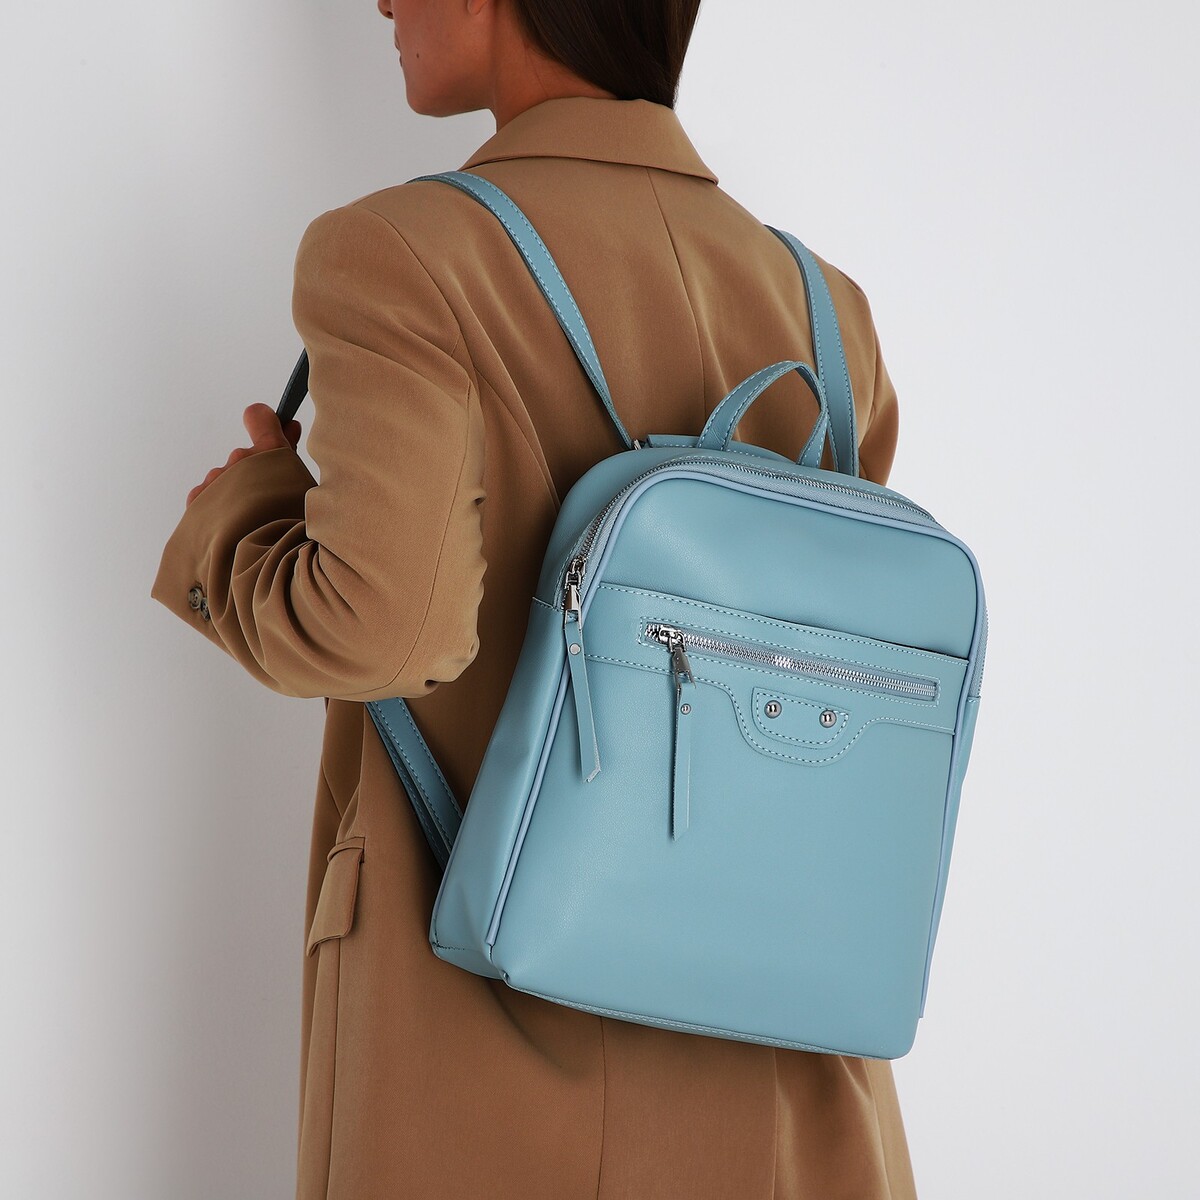 Рюкзак женский из искусственной кожи на молнии, 3 кармана, цвет голубой рюкзак молодежный из искусственной кожи на молнии 4 кармана